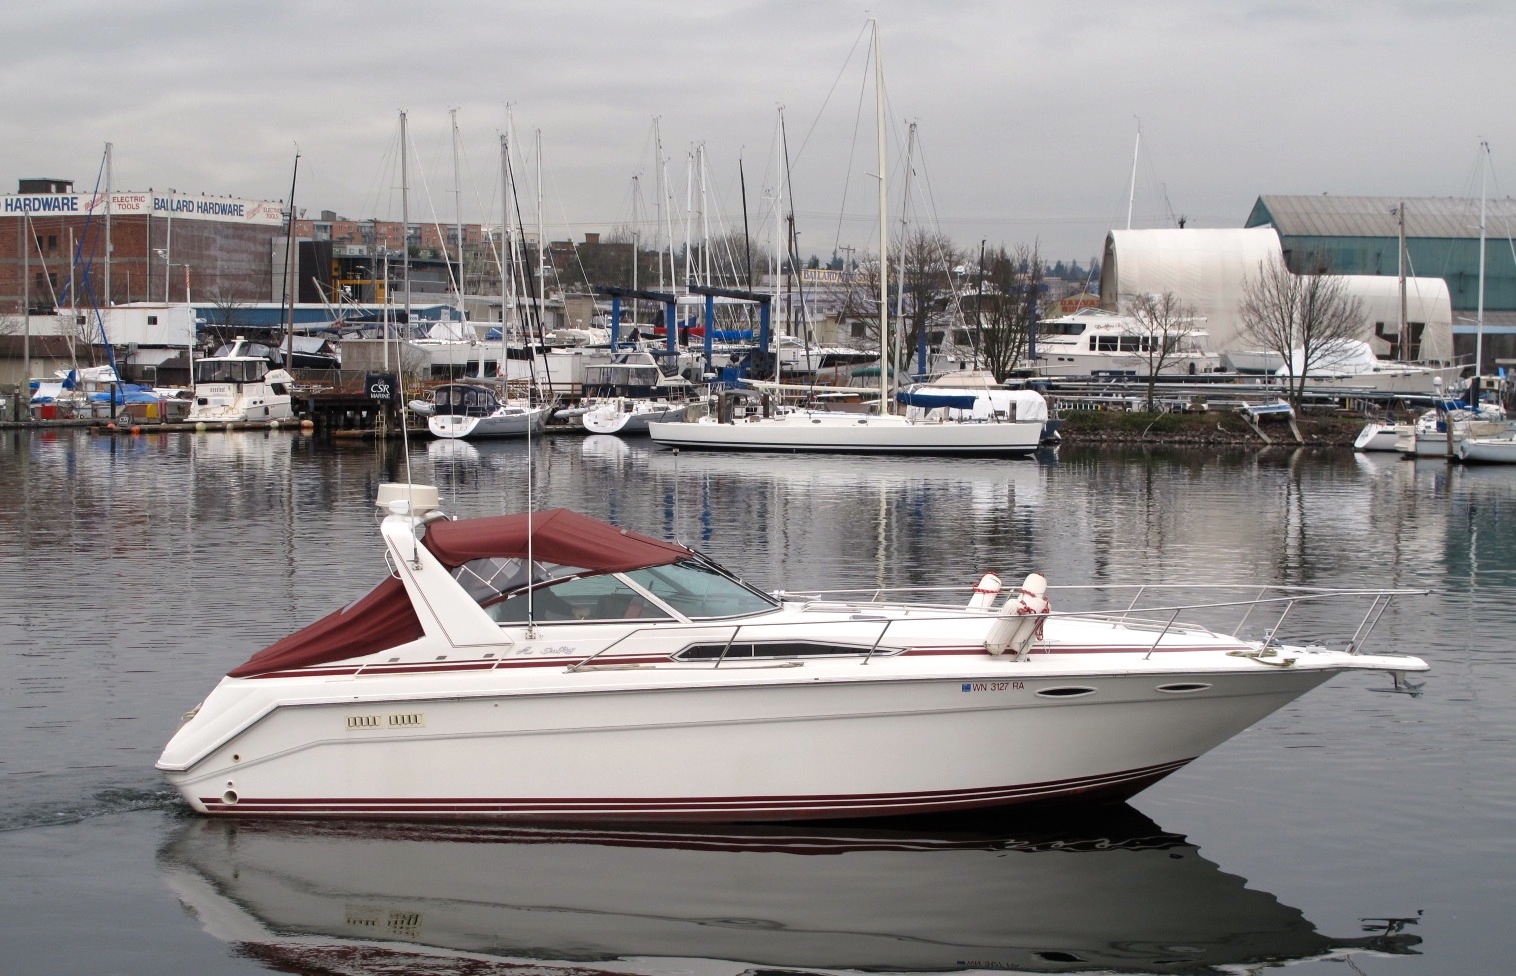 SOLD! – 39′ Sea Ray Sundancer 1990 – $48,750 – Seattle, WA